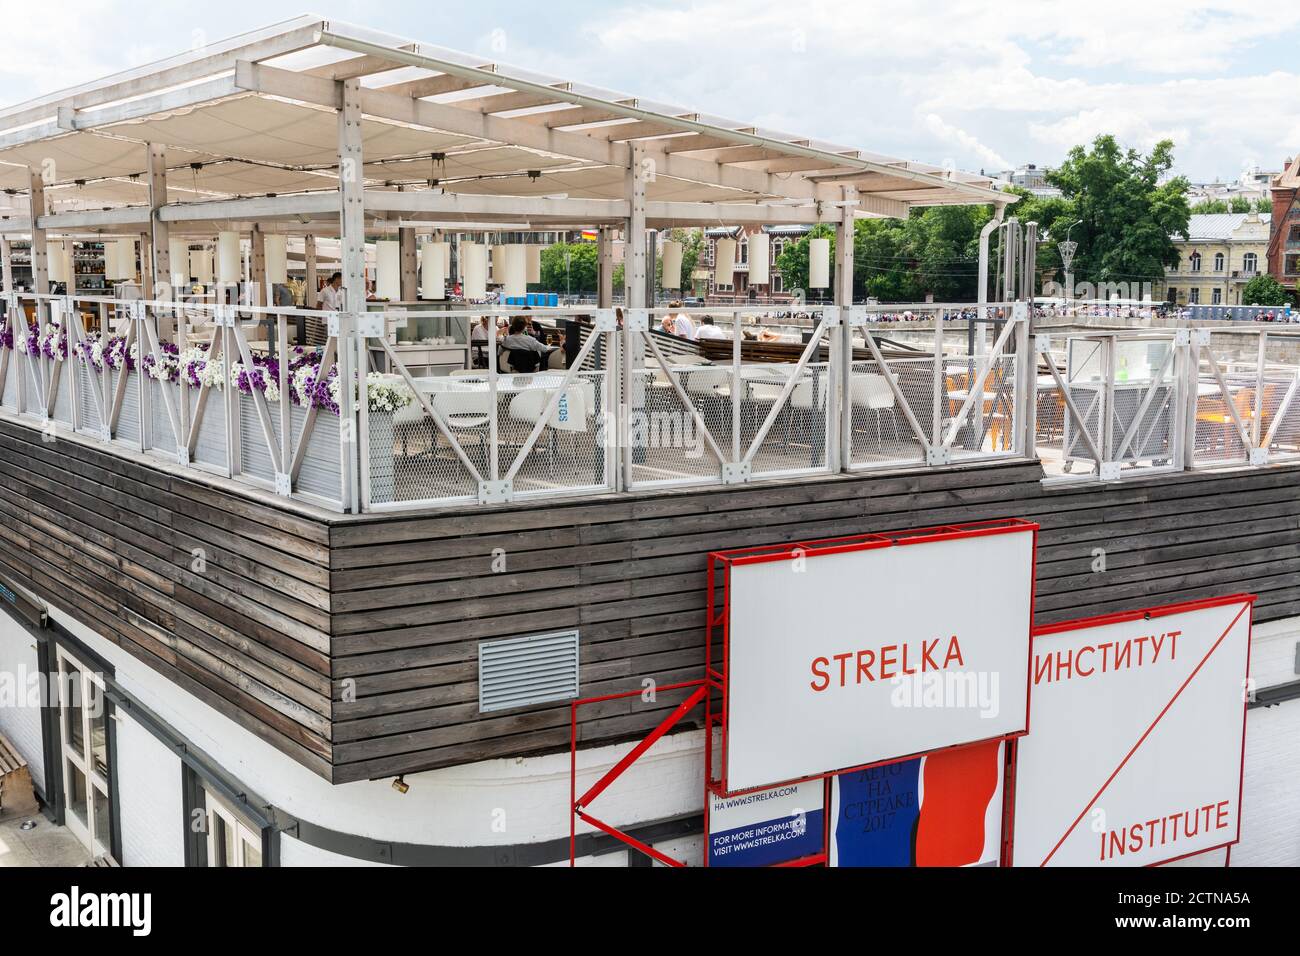 Moskau, Russland – 11. Juni 2017. Sommerterrasse der Strelka Bar, ein Teil des Strelka Instituts in Moskau. Strelka Institut für Medien, Architektur und De Stockfoto